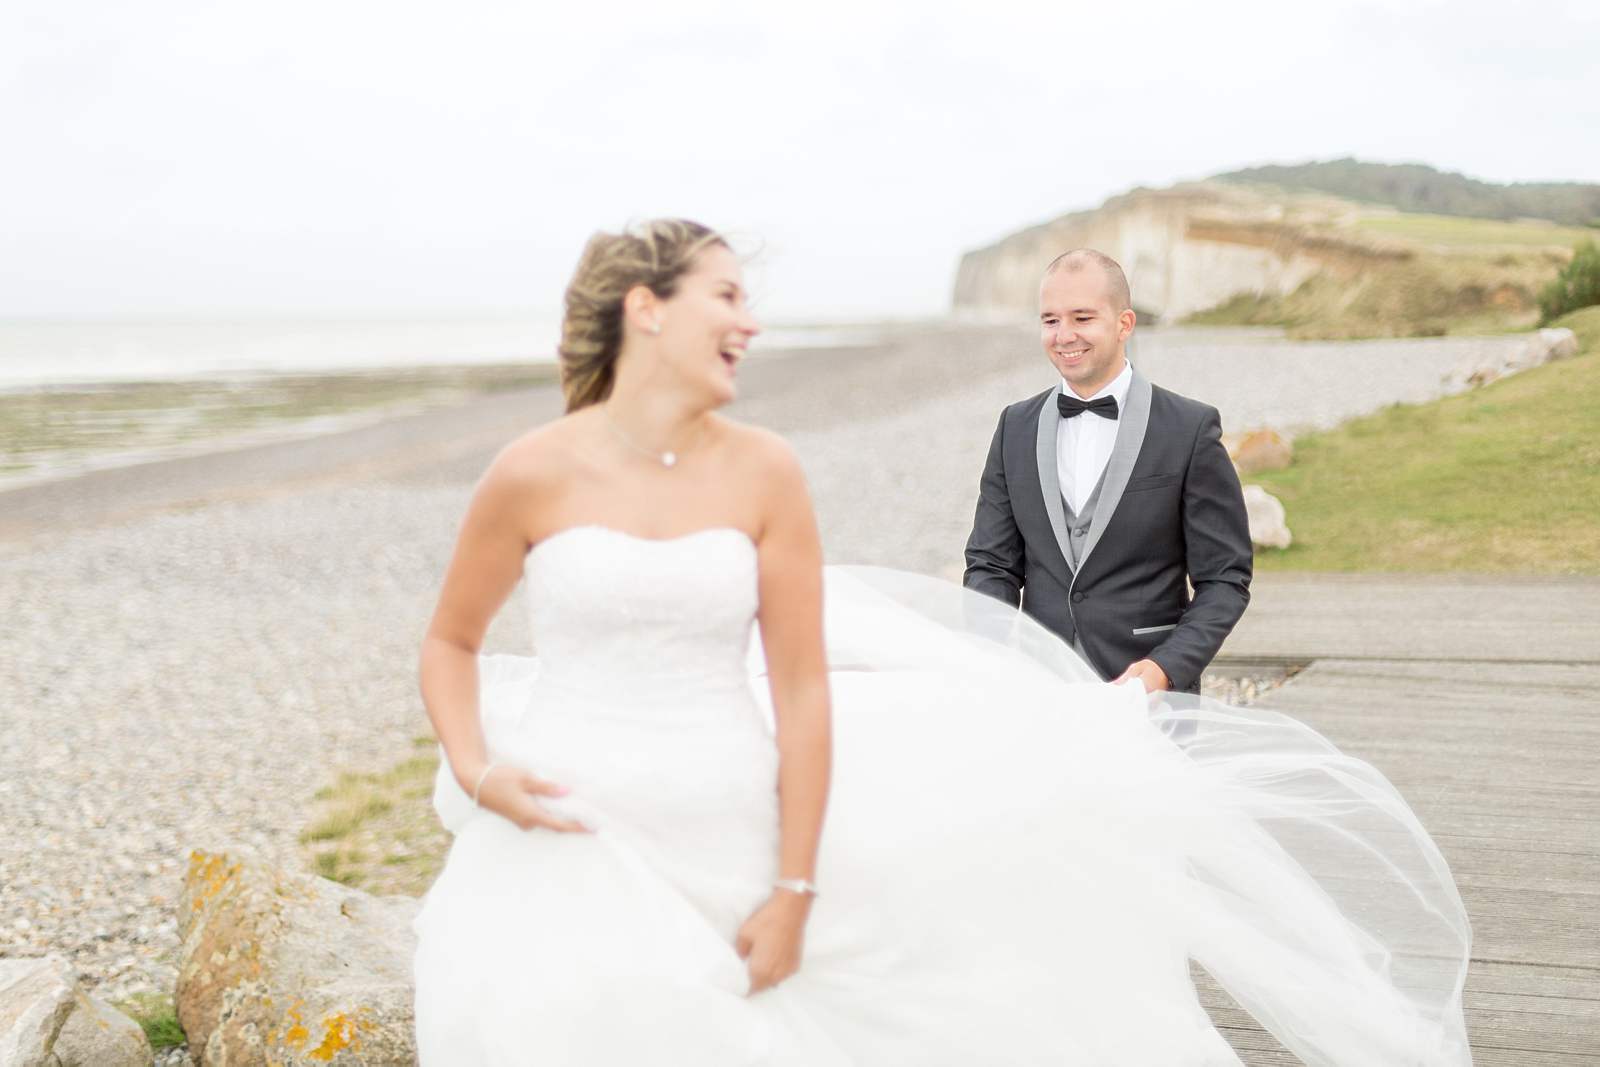 photographie de mariage sur la plage. rires de la mariée